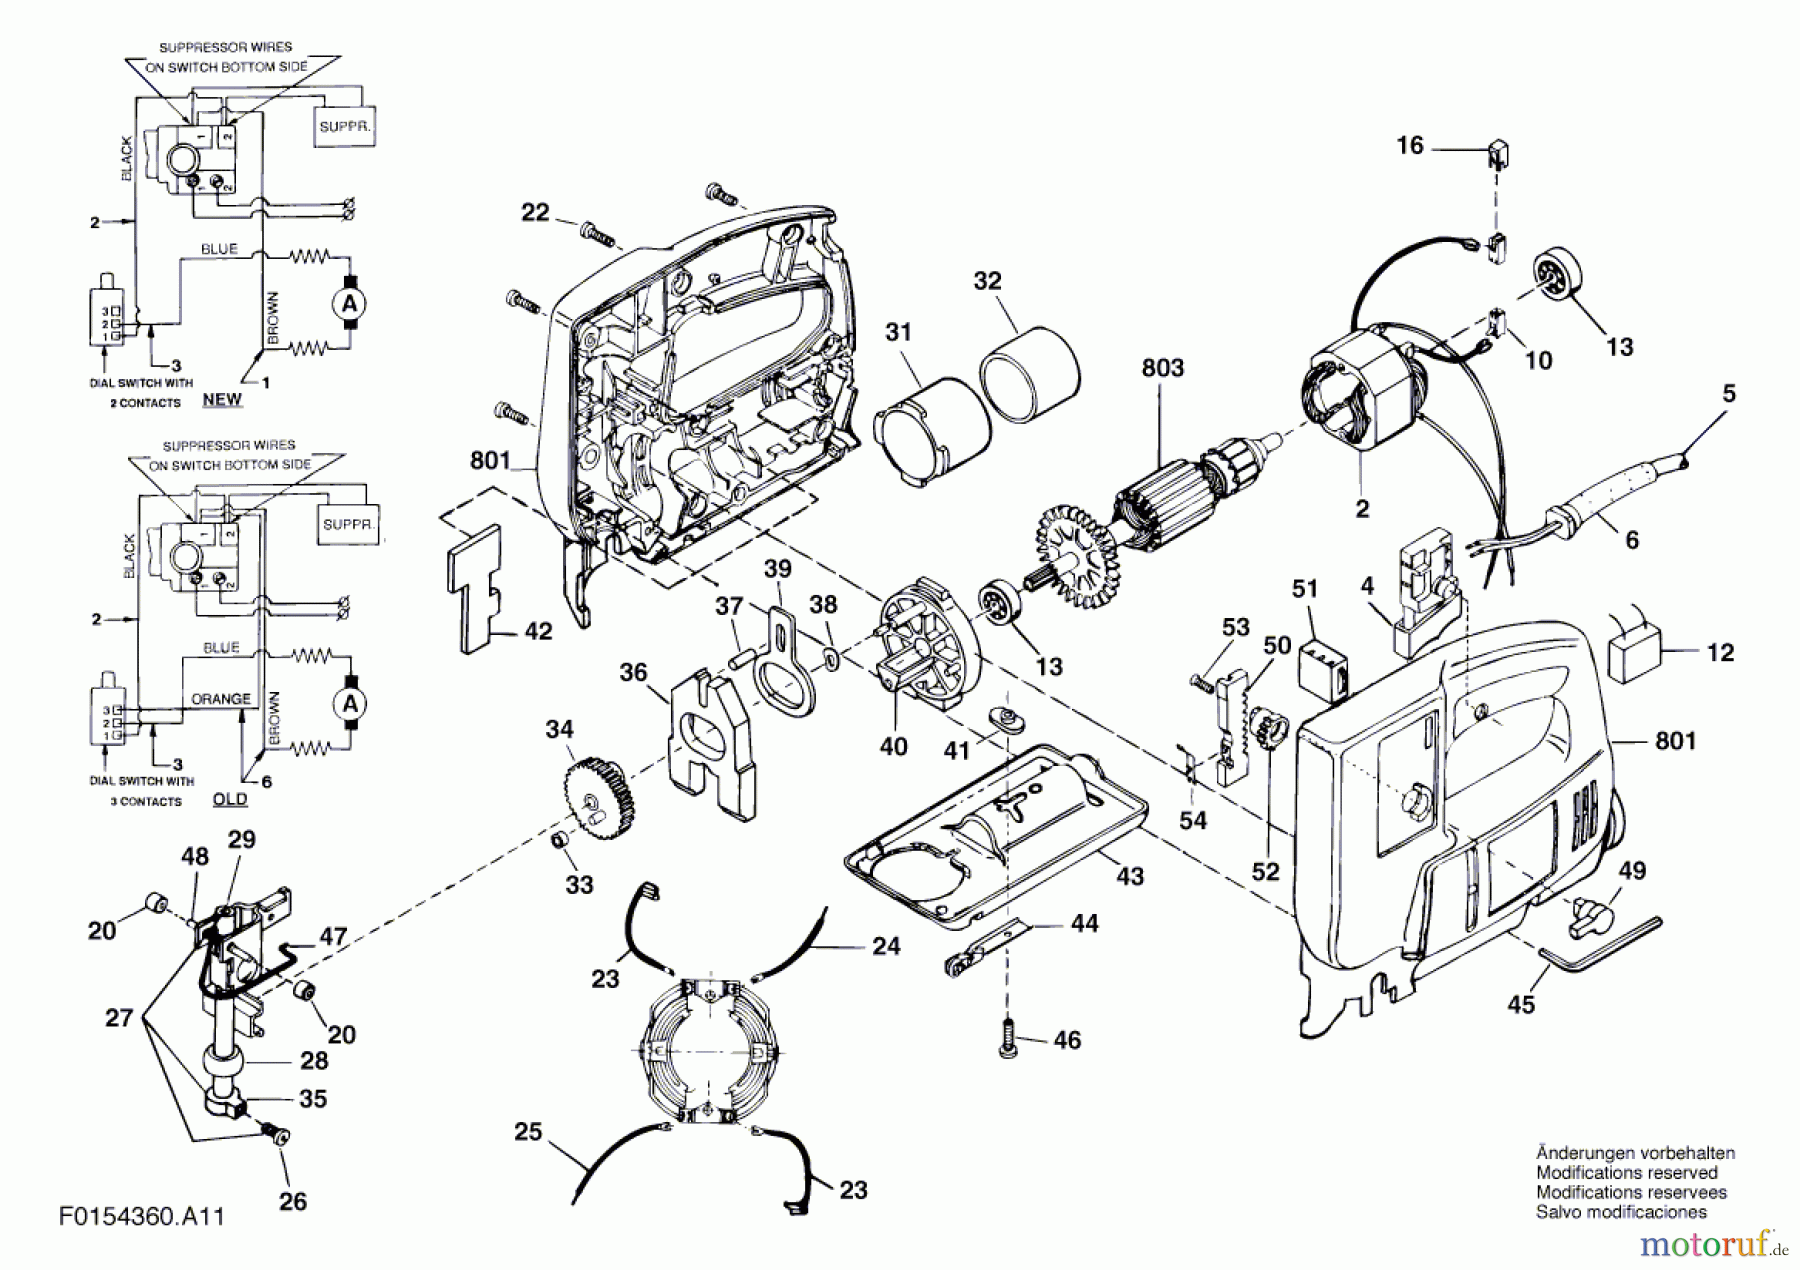  Bosch Werkzeug Stichsäge 4360 H1 Seite 1